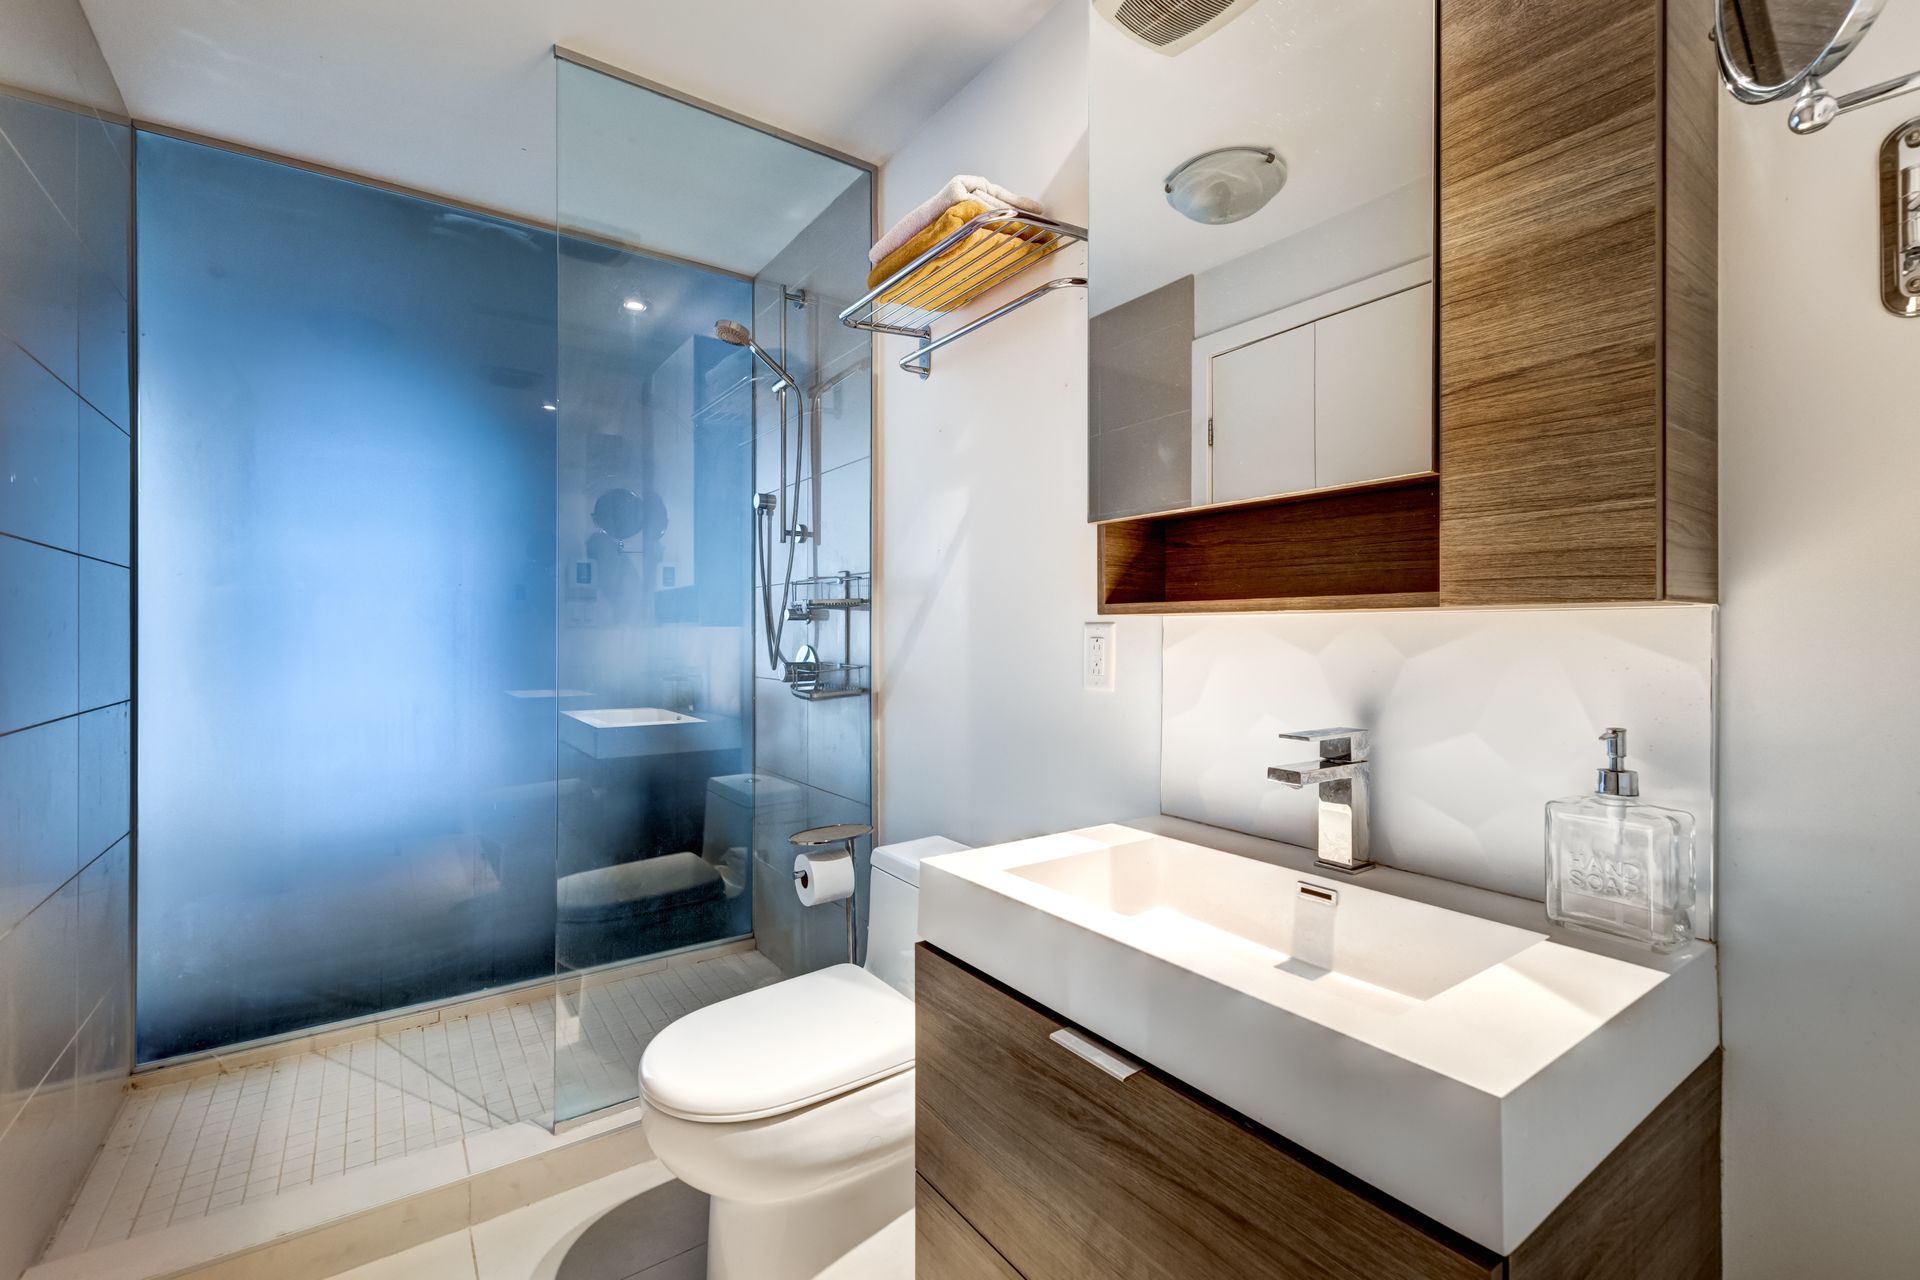 Salle de bain avec douche de couleur bleue